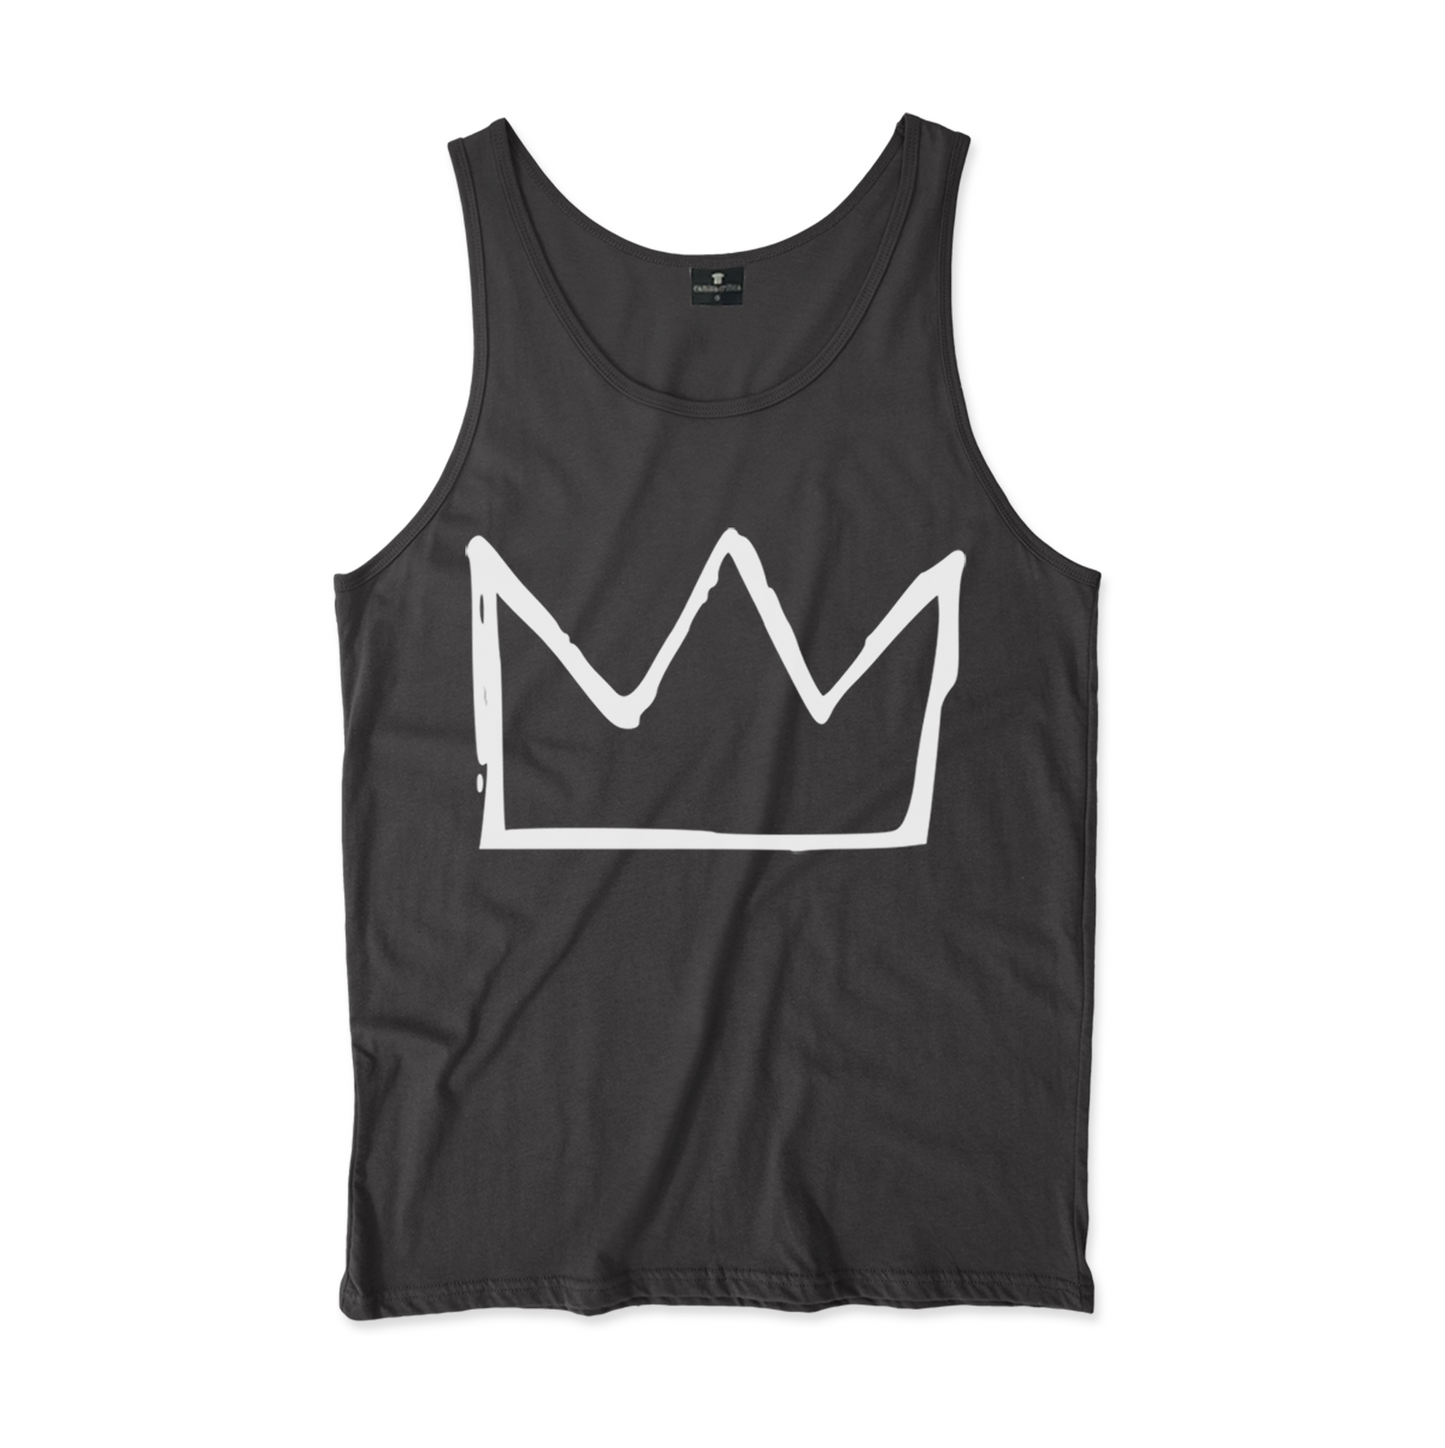 Camiseta Regata. EIlustração de uma coroa ao estilo construído por Jean-Michel Basquiat.